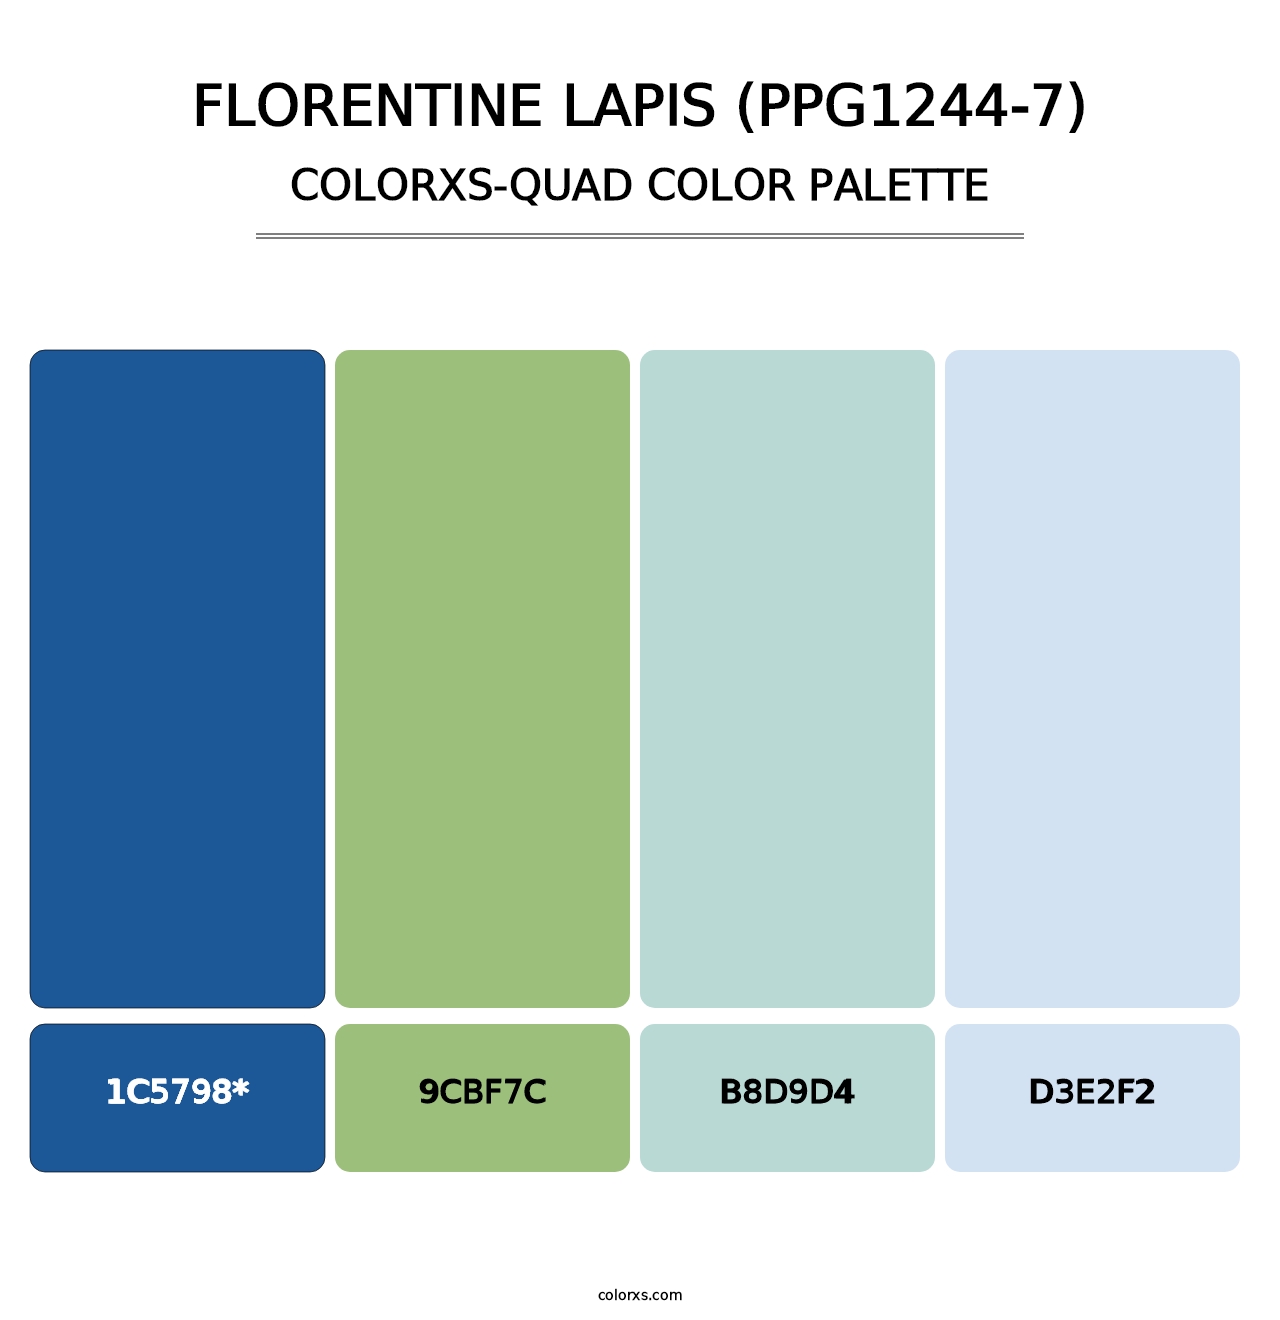 Florentine Lapis (PPG1244-7) - Colorxs Quad Palette